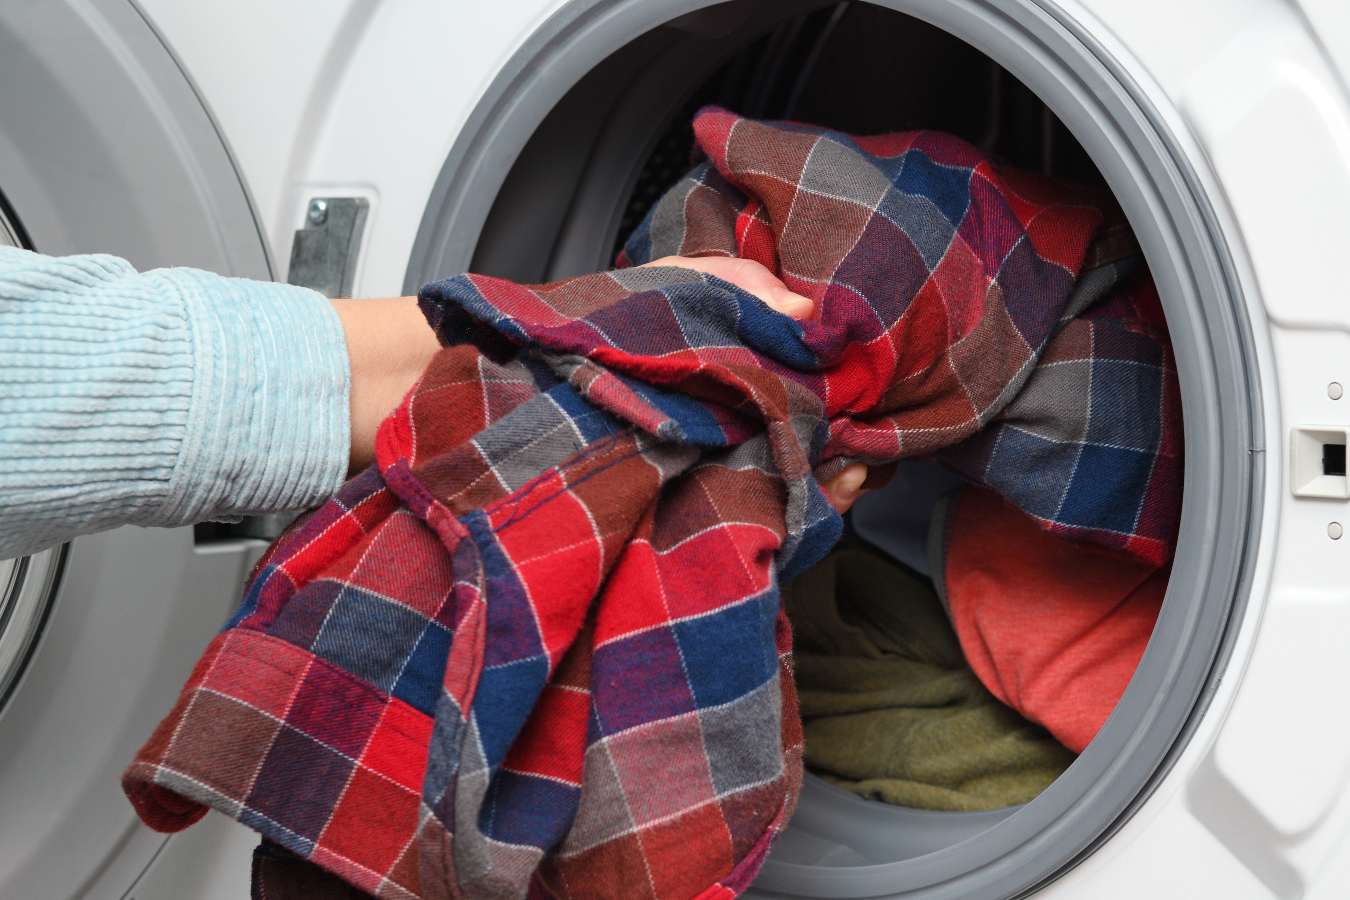 Ocet do prania – jak go użyć? Jakie ma działanie i jakie daje efekty?